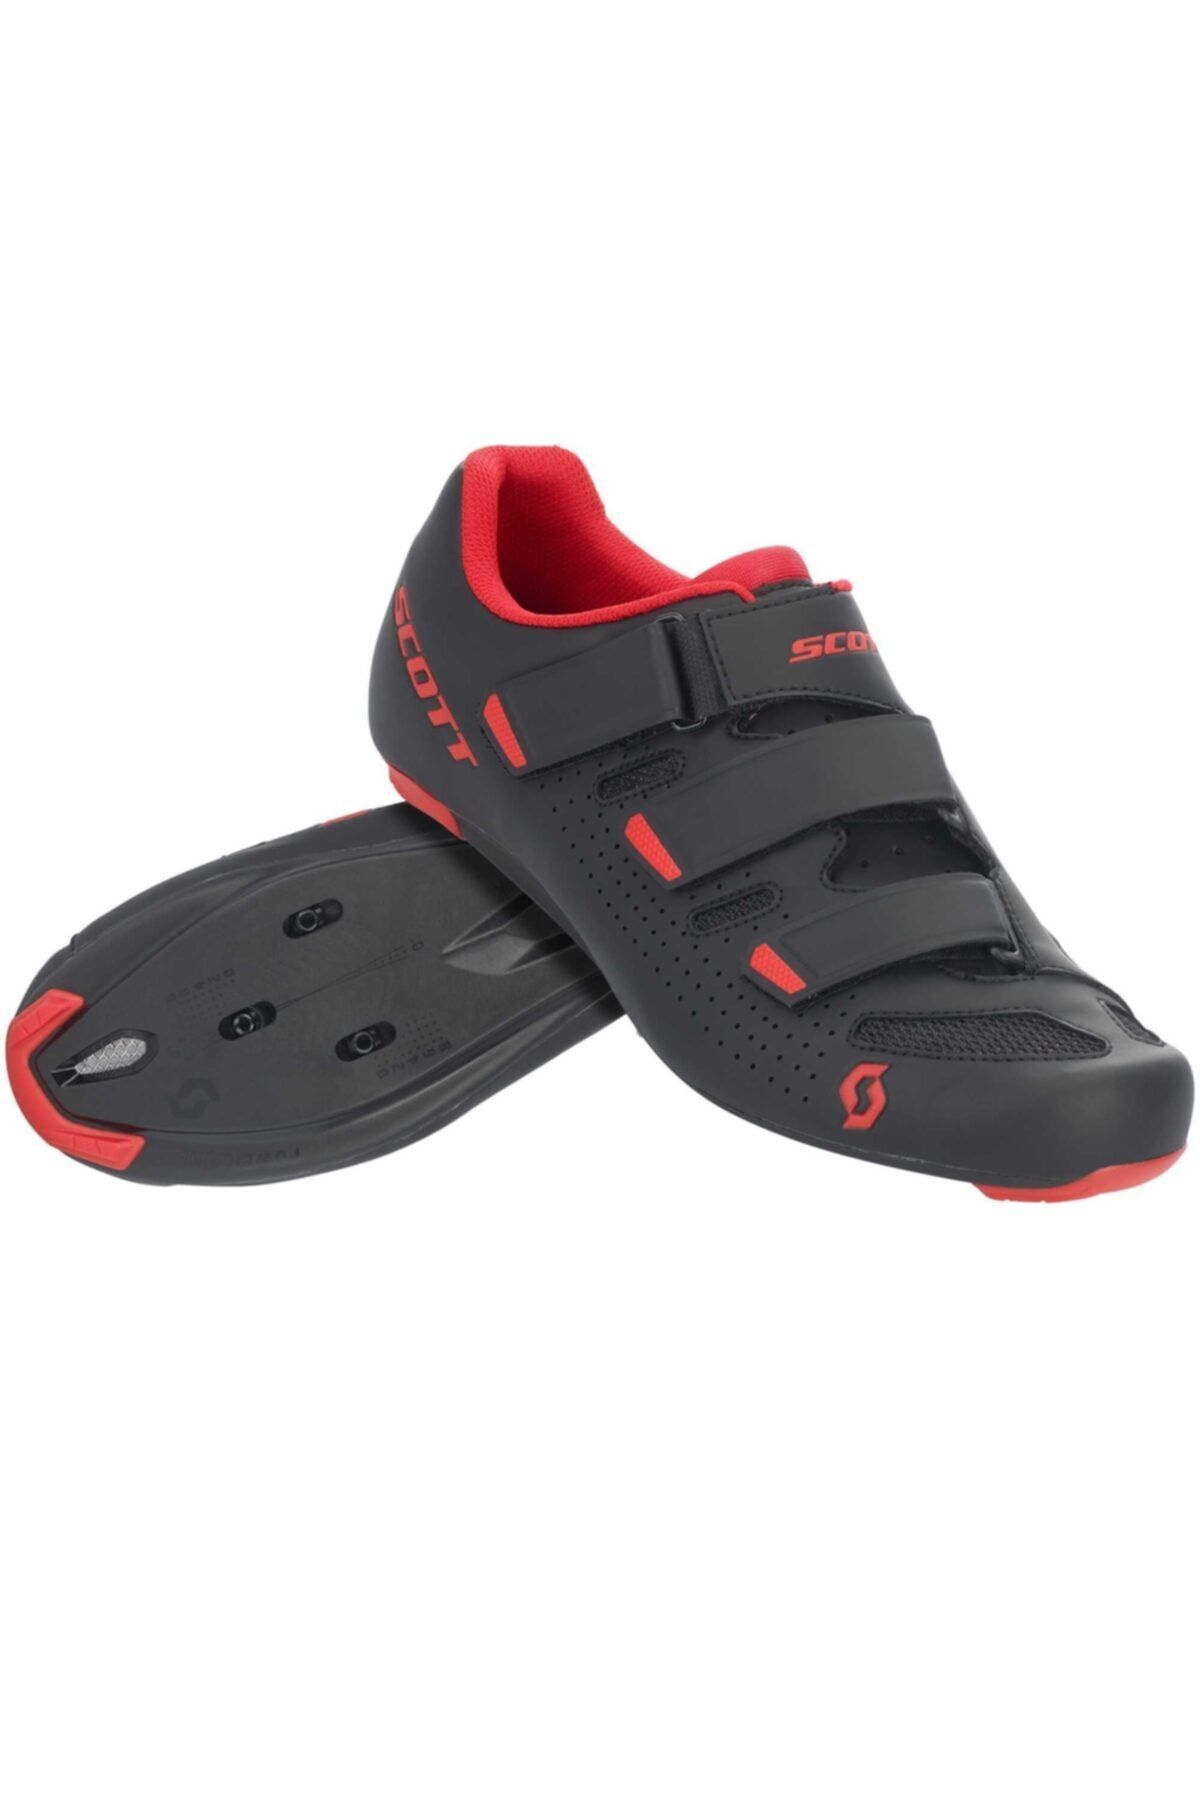 SCOTT Comp Yol Ayakkabısı Siyah-kırmızı 42